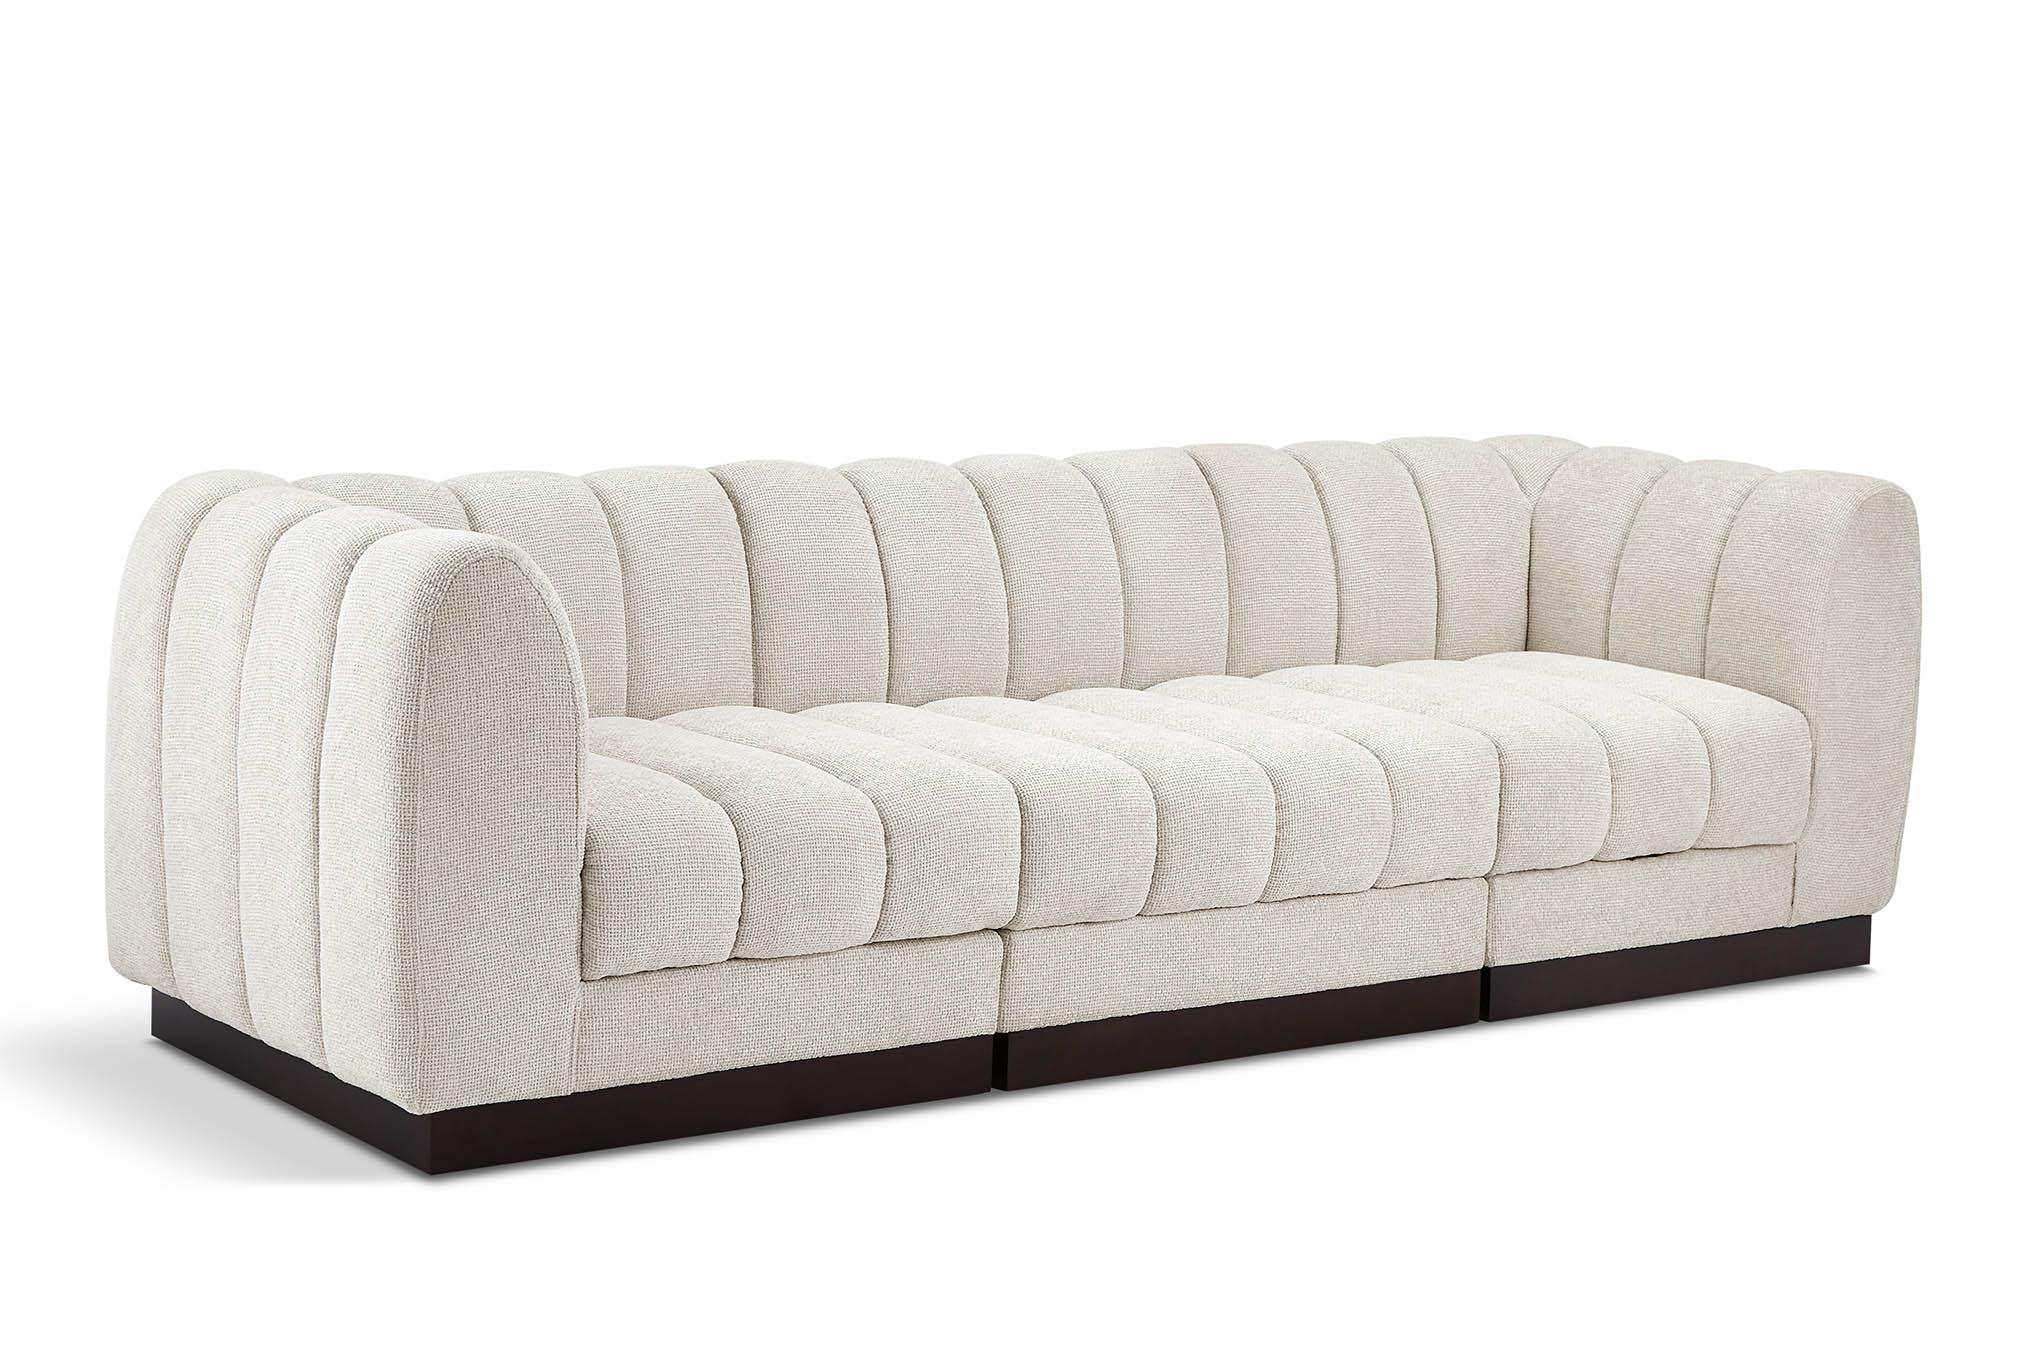 Contemporary, Modern Modular Sofa QUINN 124Cream-S101 124Cream-S101 in Cream Chenille